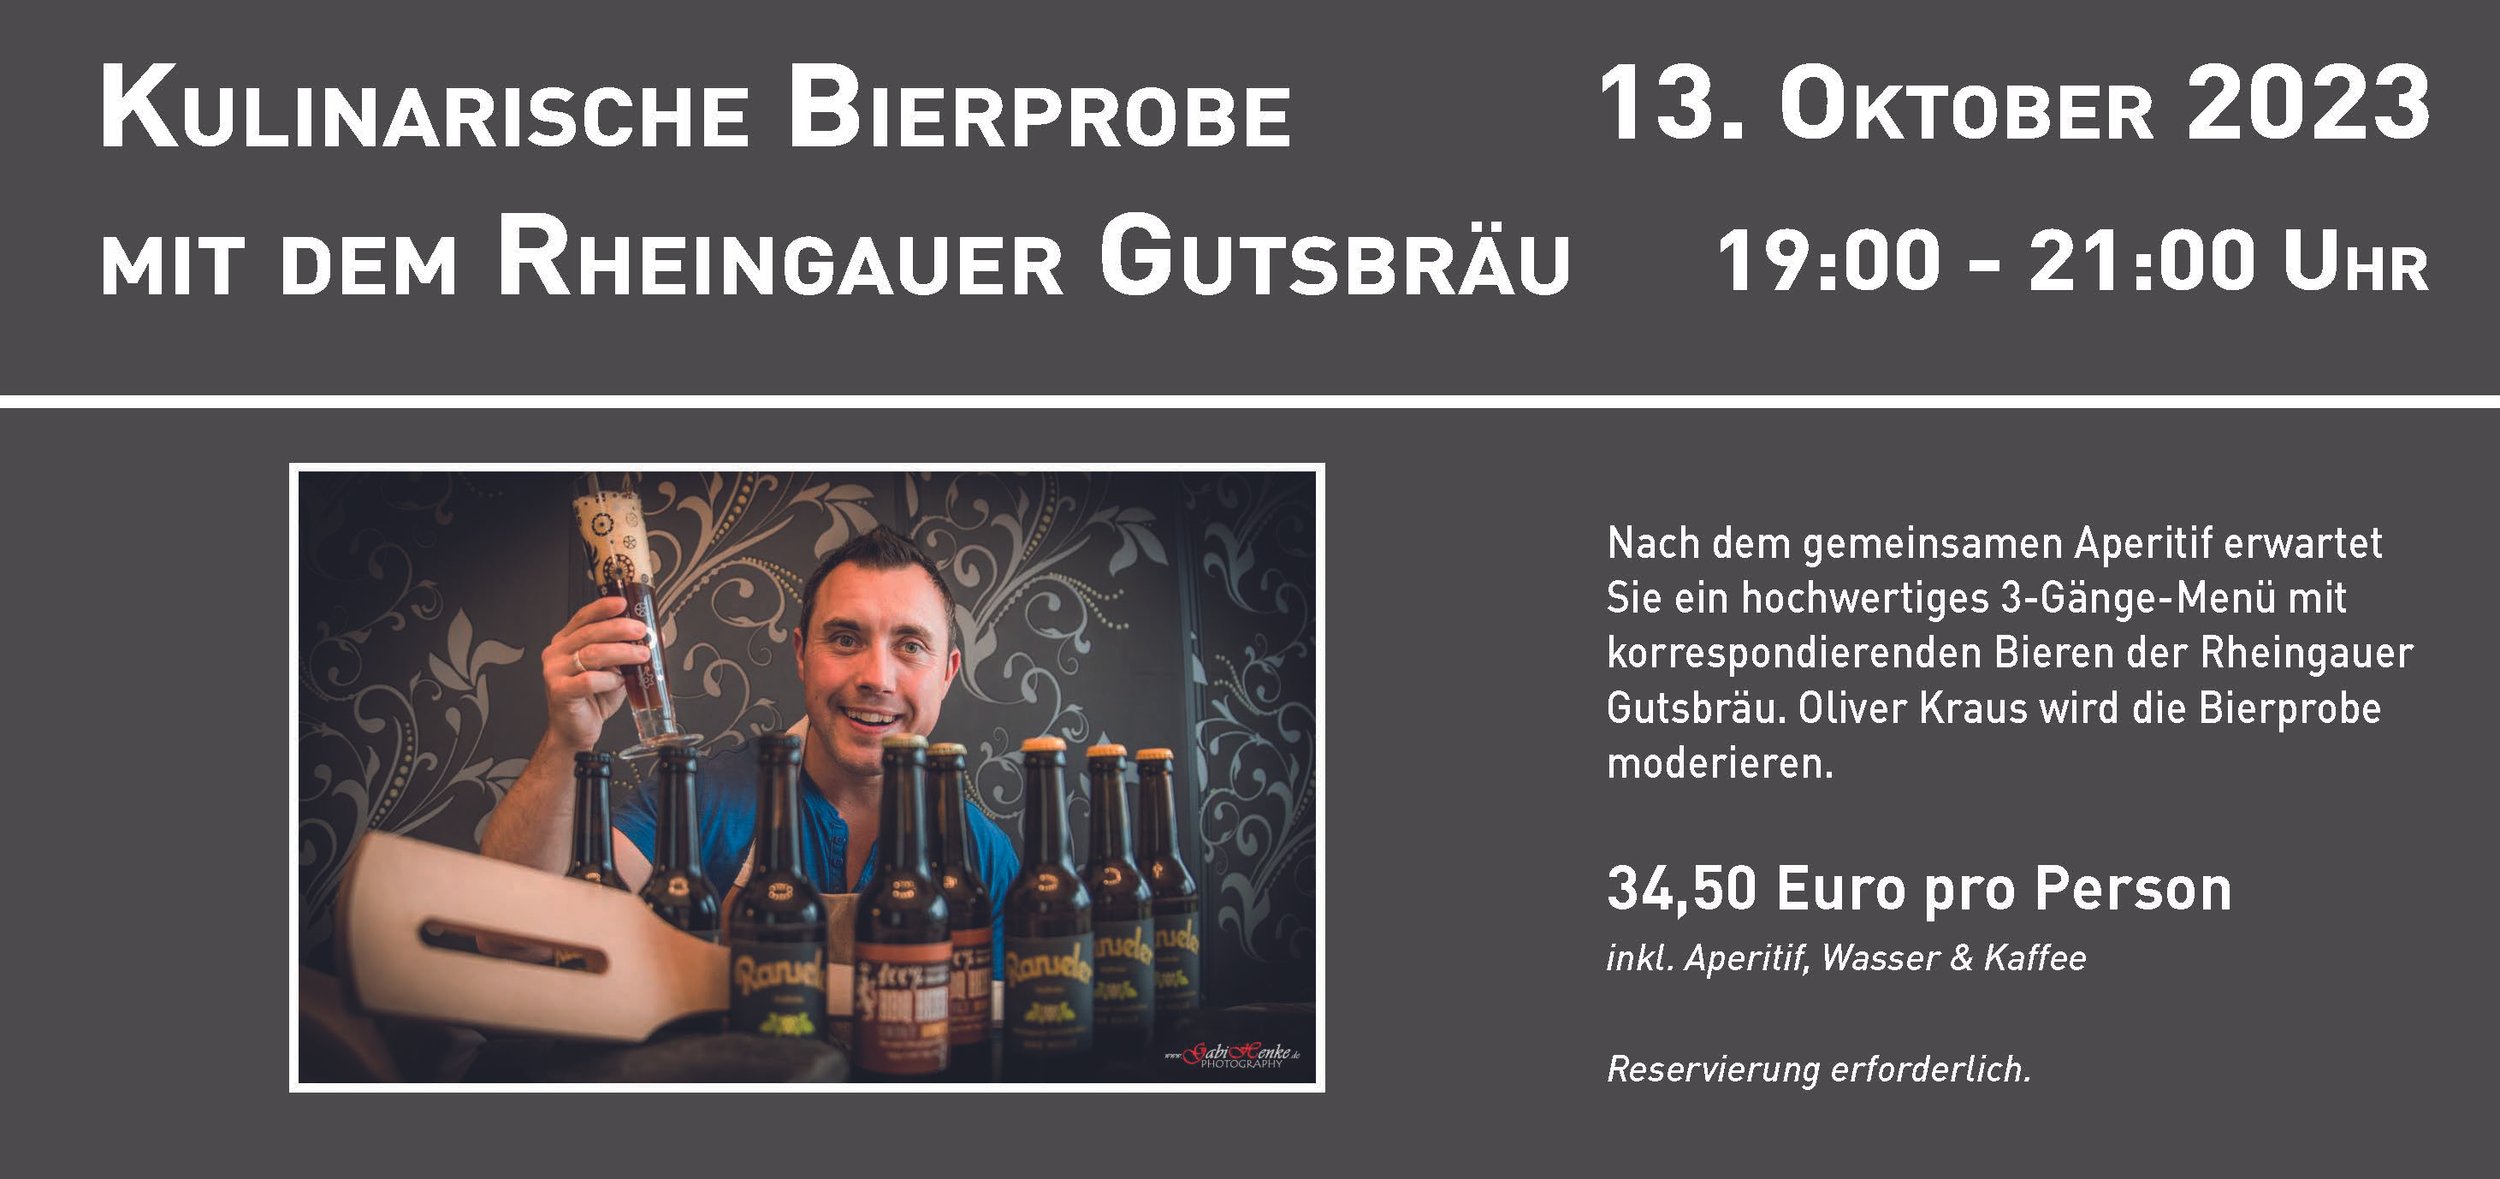 Dégustation de bière culinaire avec la Rheingauer Gutsbräu